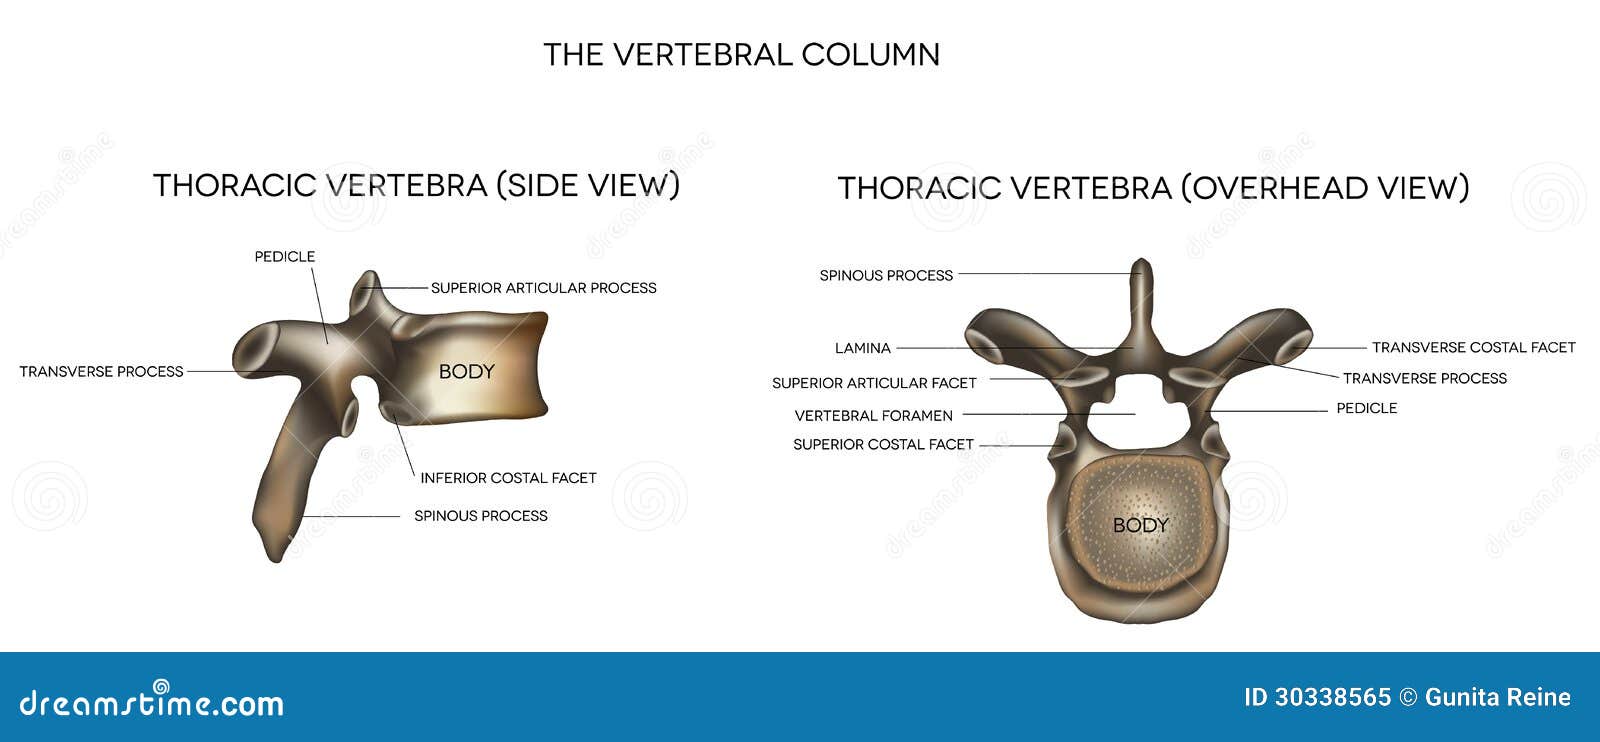 thoracic vertebra